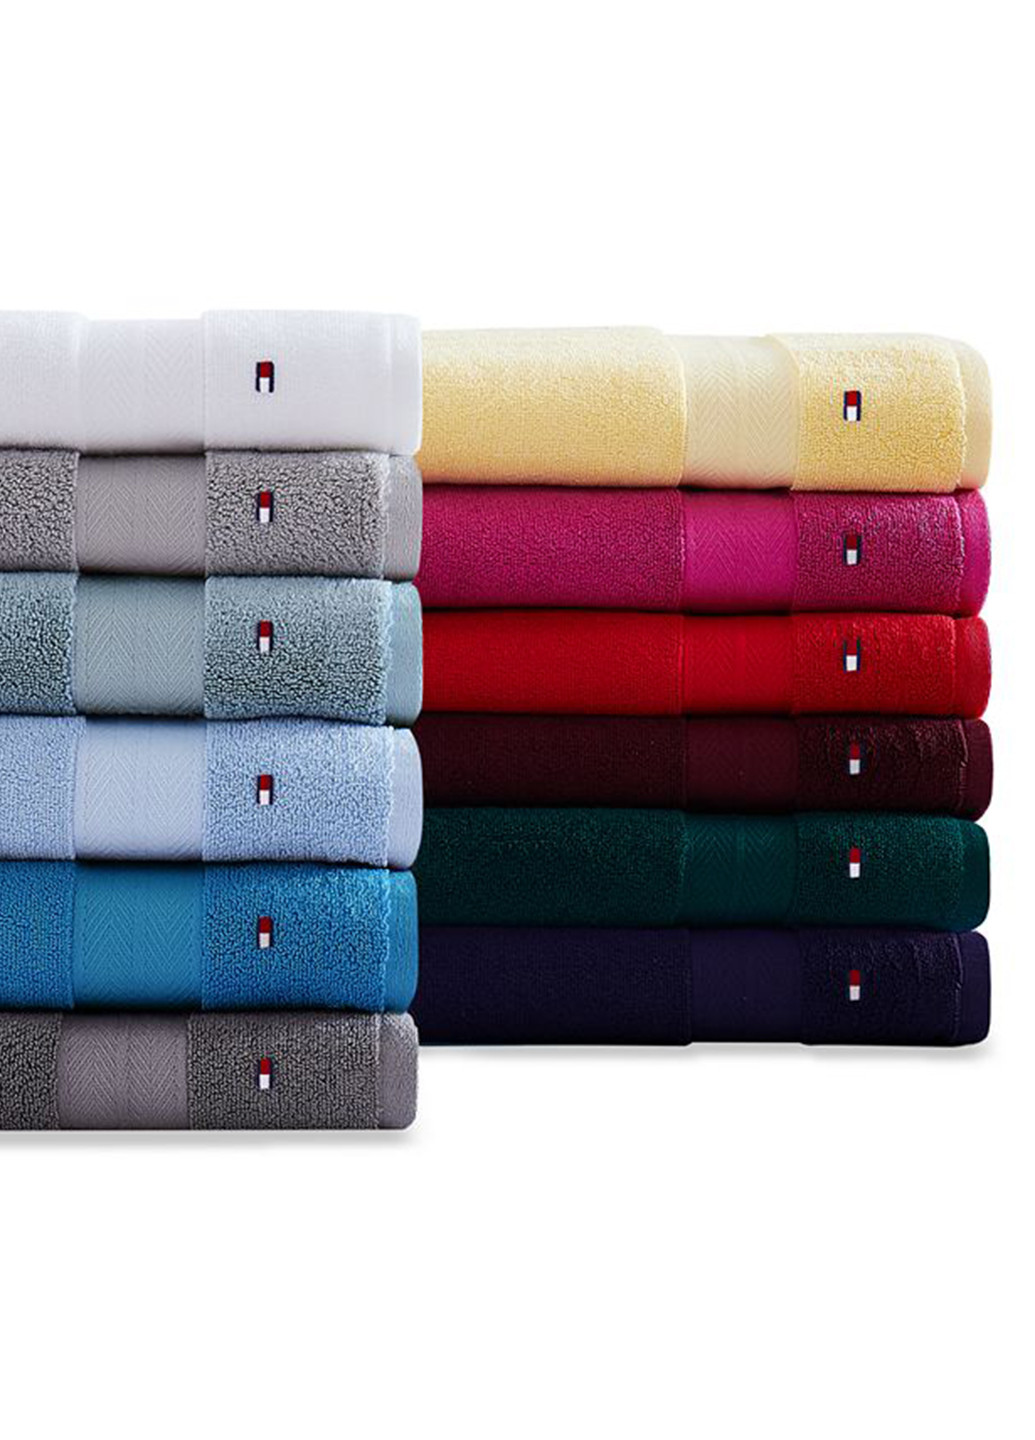 Tommy Hilfiger полотенце, 76х138 см однотонный бордовый производство - Индия